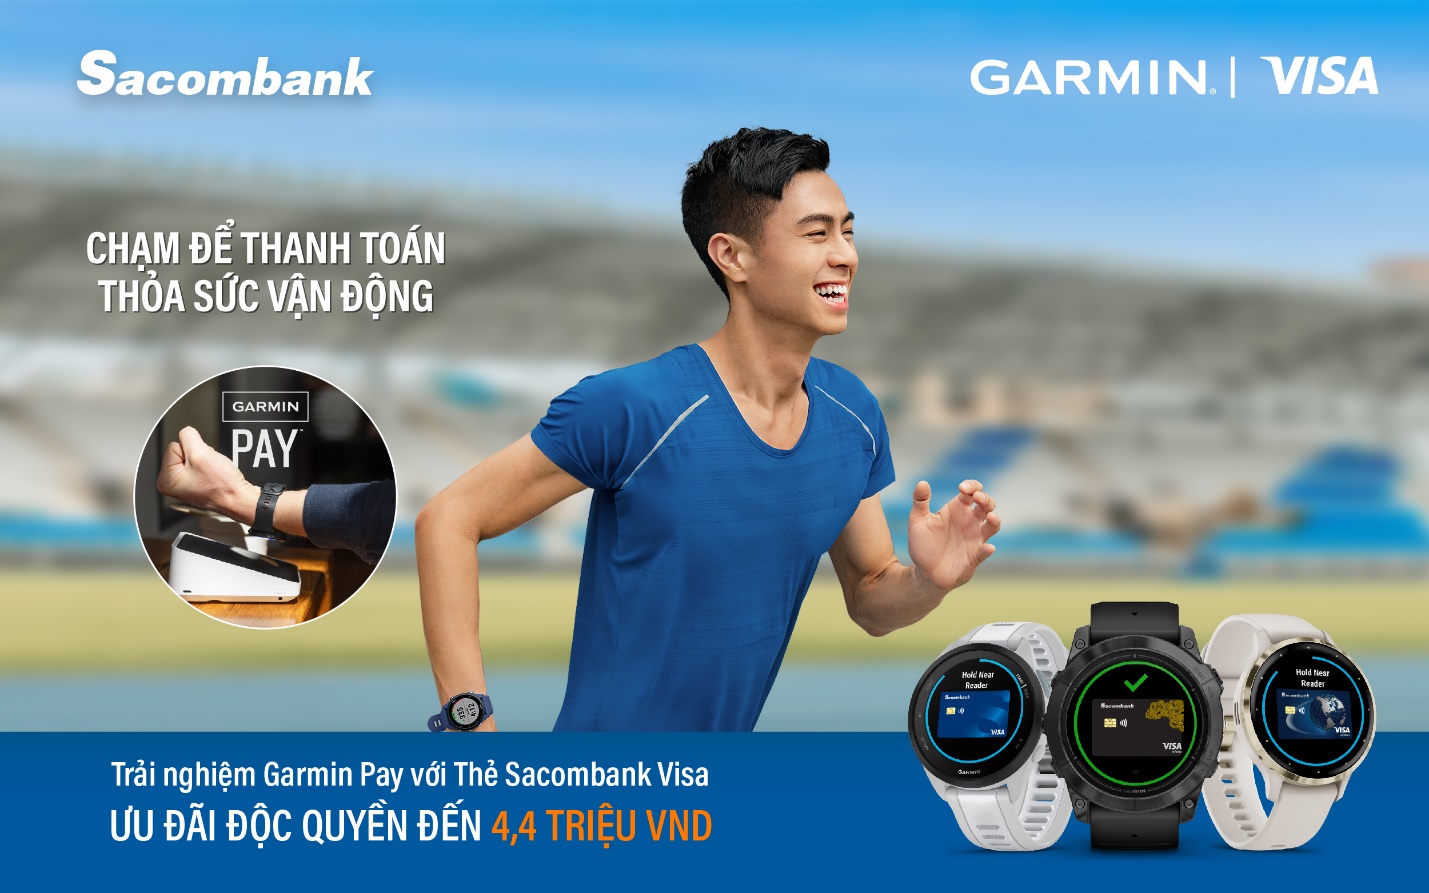 Sacombank kết nối với Garmin Pay - giải pháp thanh toán không tiếp xúc trên đồng hồ thông minh - Ảnh 1.